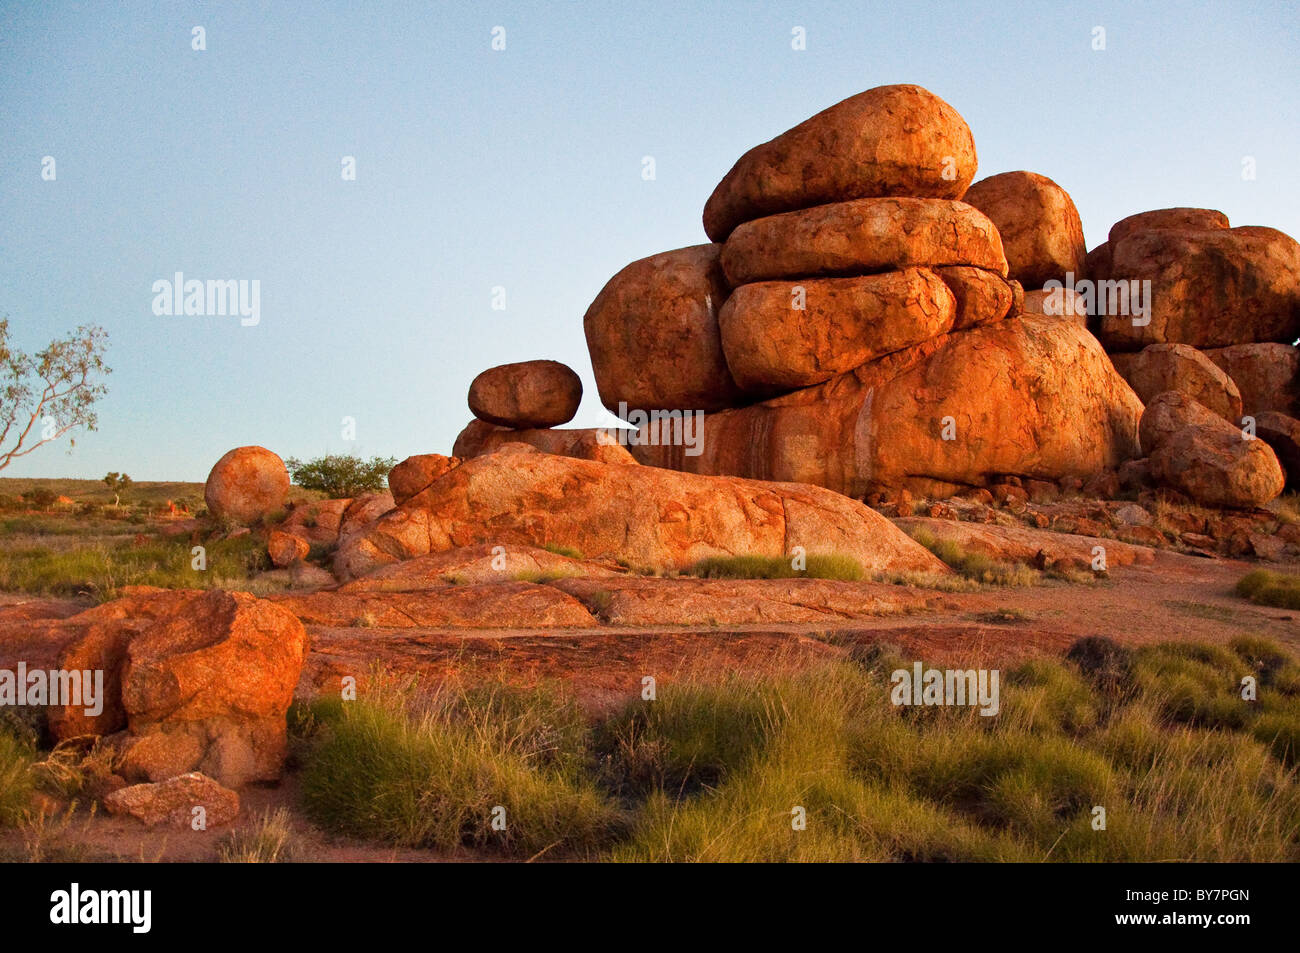 Las canicas del diablo, en el interior de Australia, el territorio del norte Foto de stock